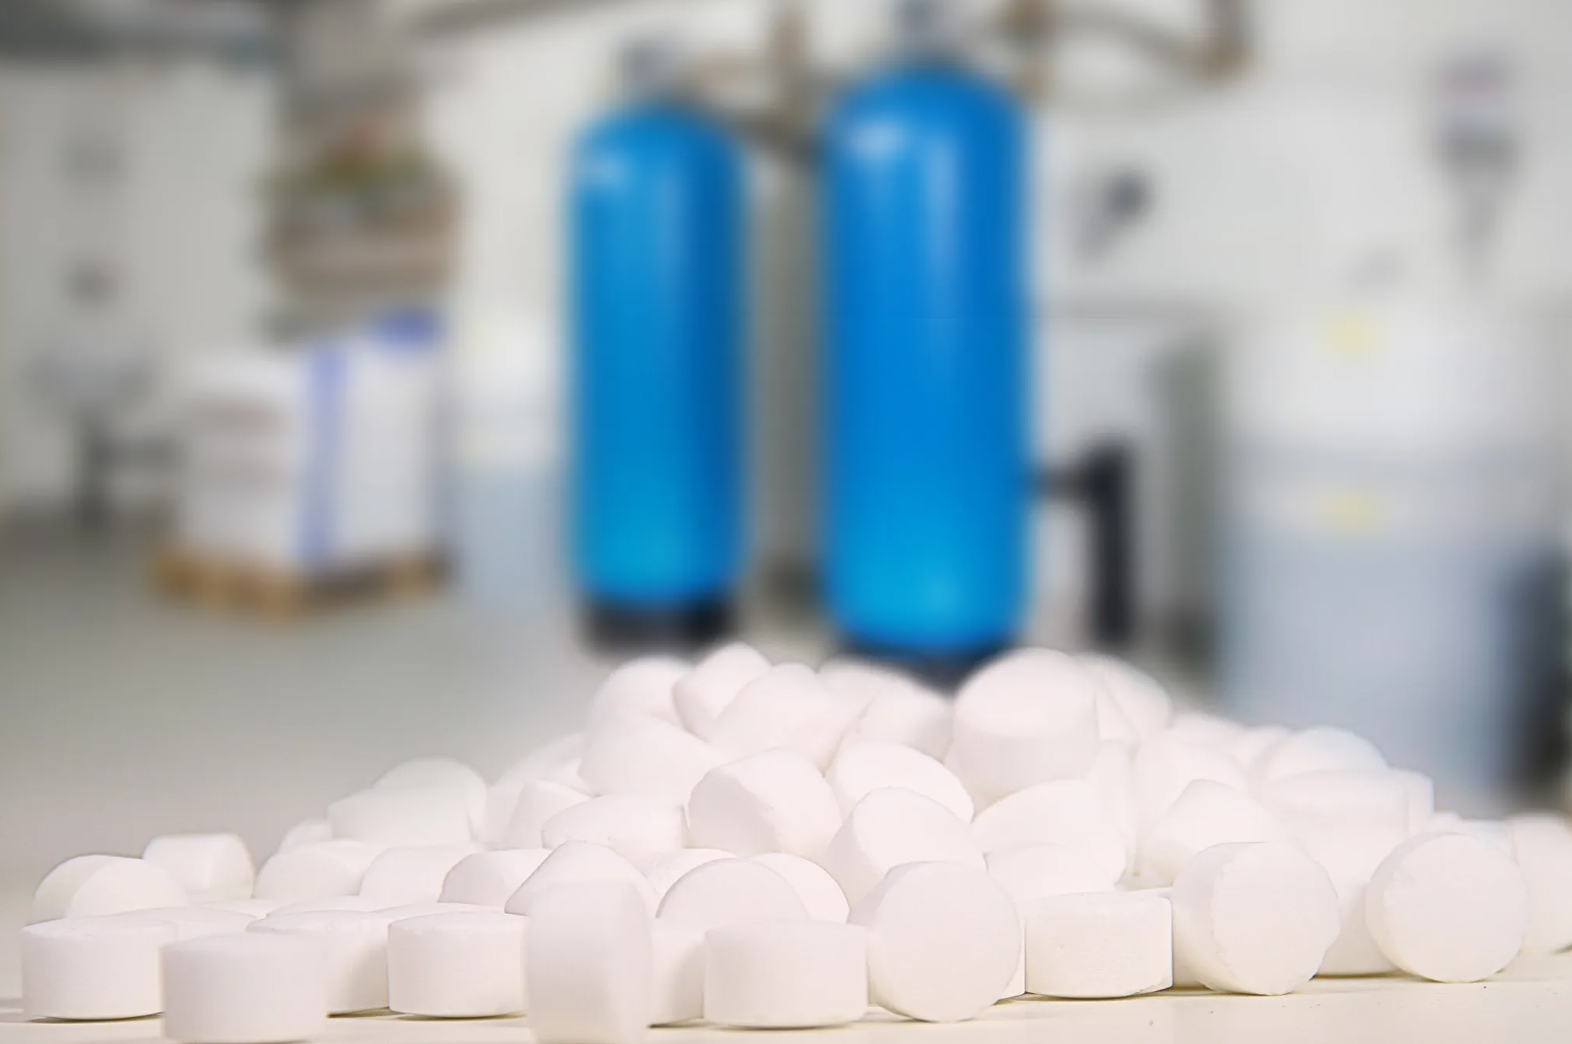 Im Vordergrund sind weiße AXAL PRO TABS scharf zu sehen, im Hintergrund unscharfe blaue Gasflaschen, in einer Industrieanlage, die auf K+S Regeneriersalz spezialisiert ist.